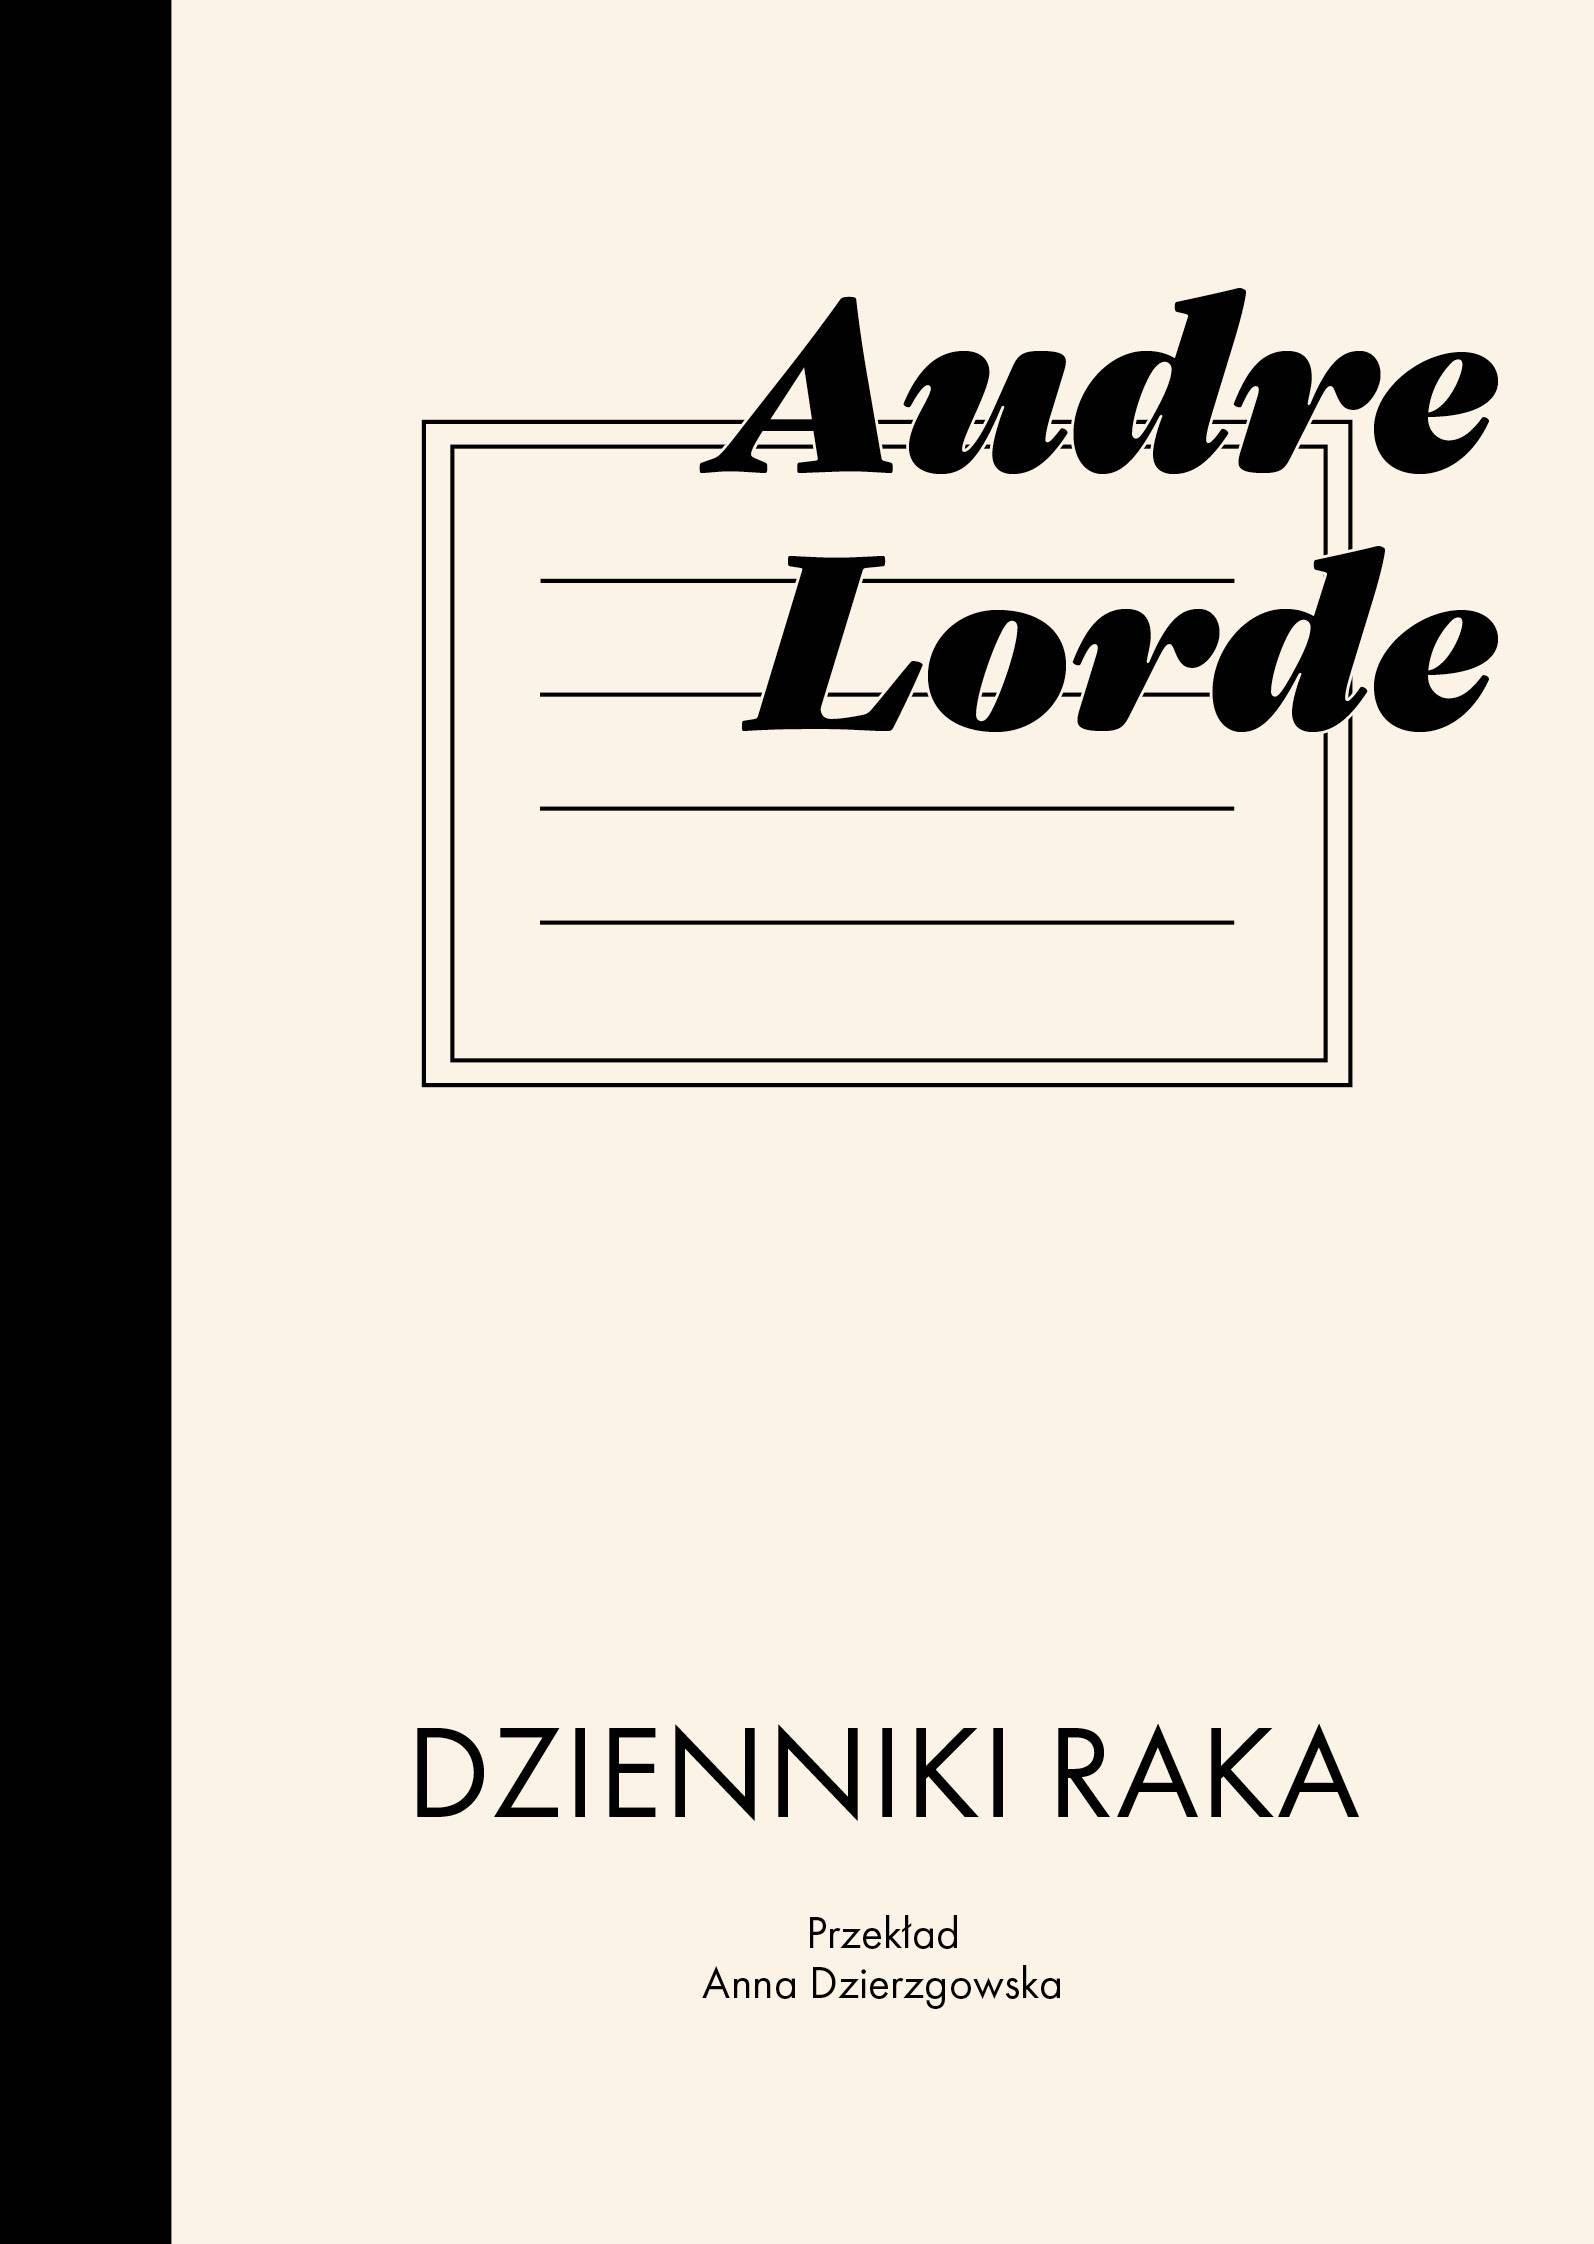 „Dzienniki raka”, Audre Lorde, tłumaczenie Anna Dzierzgowska, Wydawnictwo Fame Art (Fot. materiały prasowe)